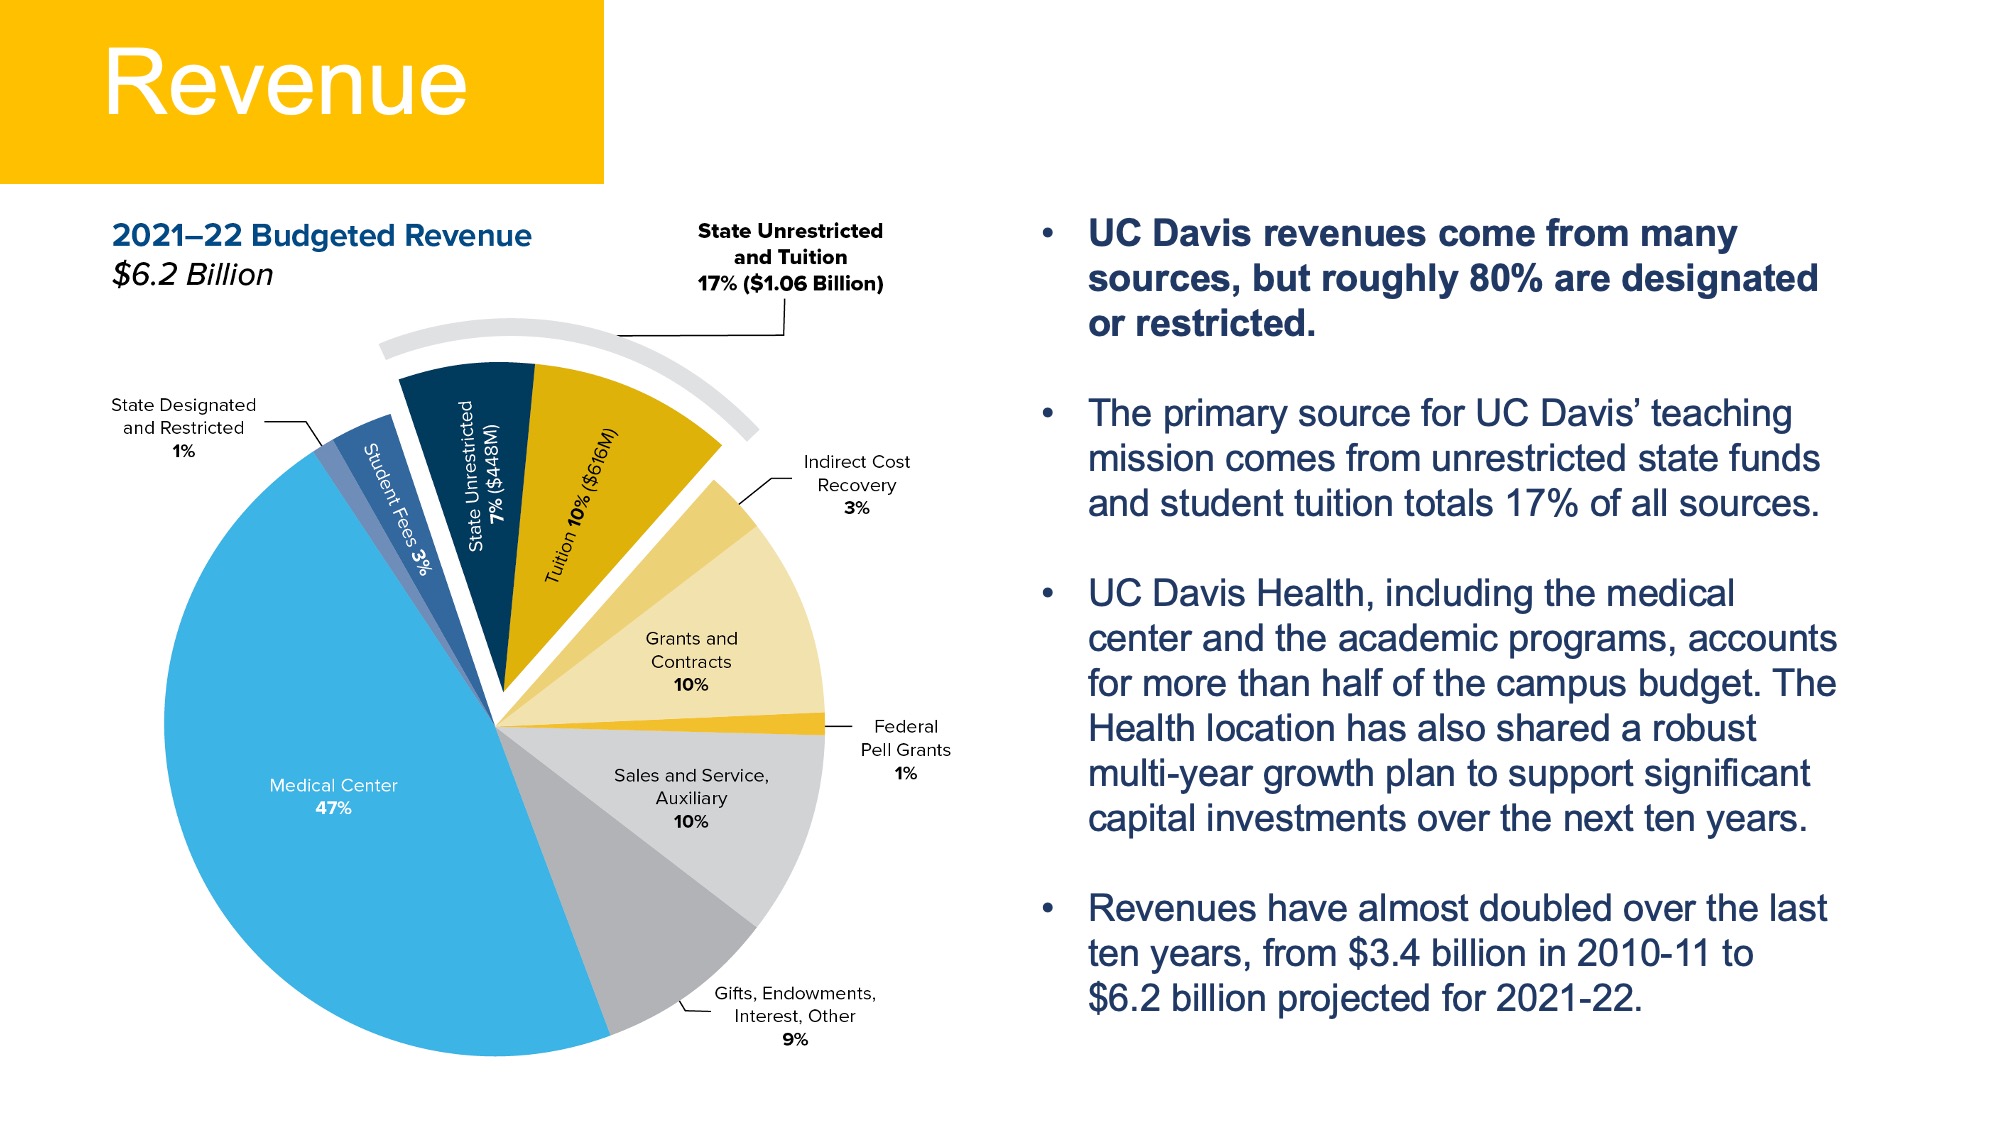 UC Davis Revenue and Budget figures